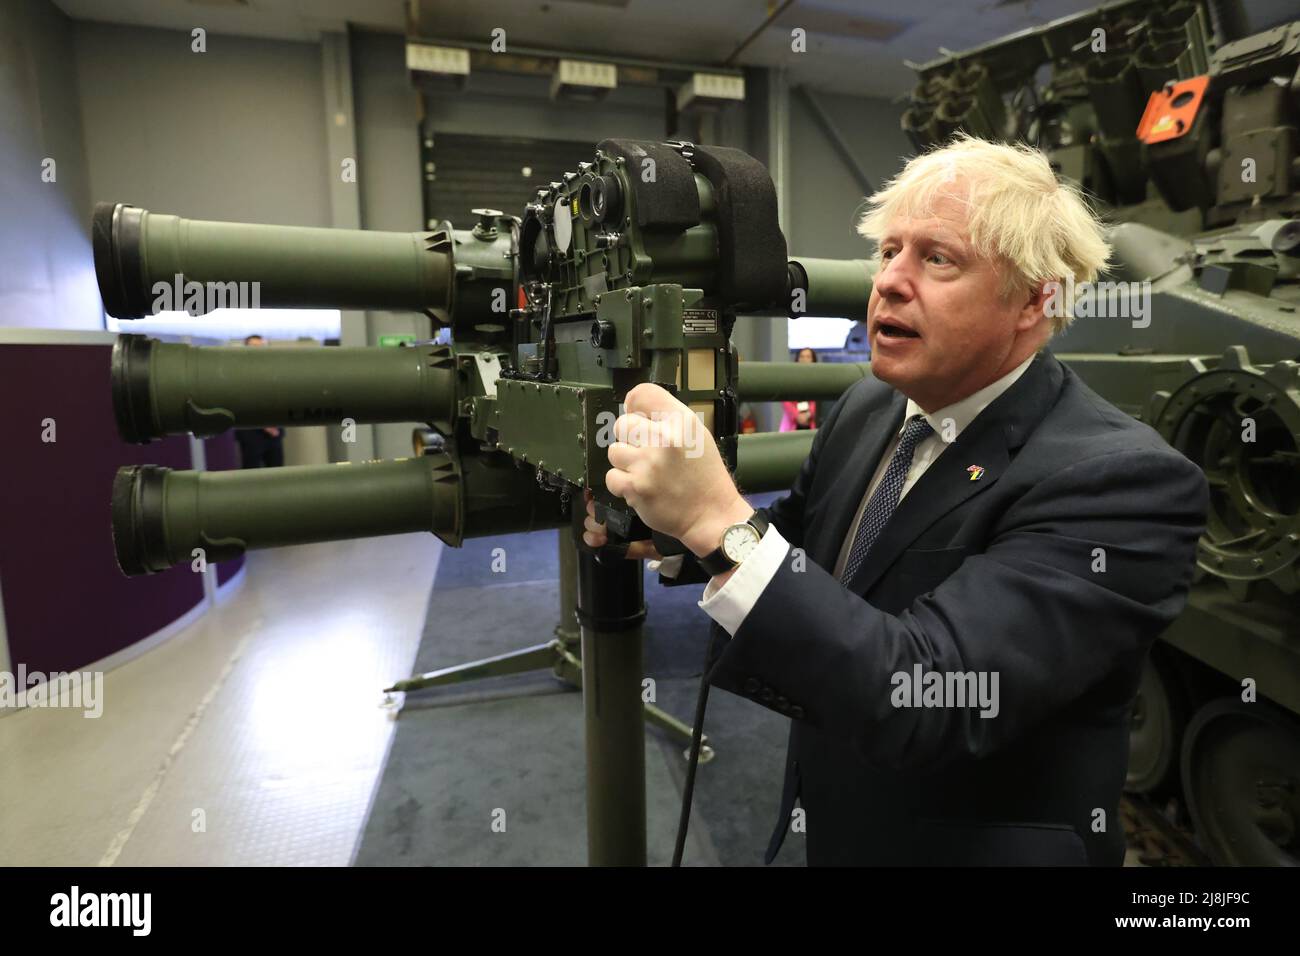 Premierminister Boris Johnson mit einem Mark 3-Schulterabschuss-LML-Raketensystem (Lightweight Multiple Launcher) beim Waffenhersteller Thales in Belfast während seines Besuchs in Nordirland zu Gesprächen mit Stormont-Parteien. Bilddatum: Montag, 16. Mai 2022. Stockfoto